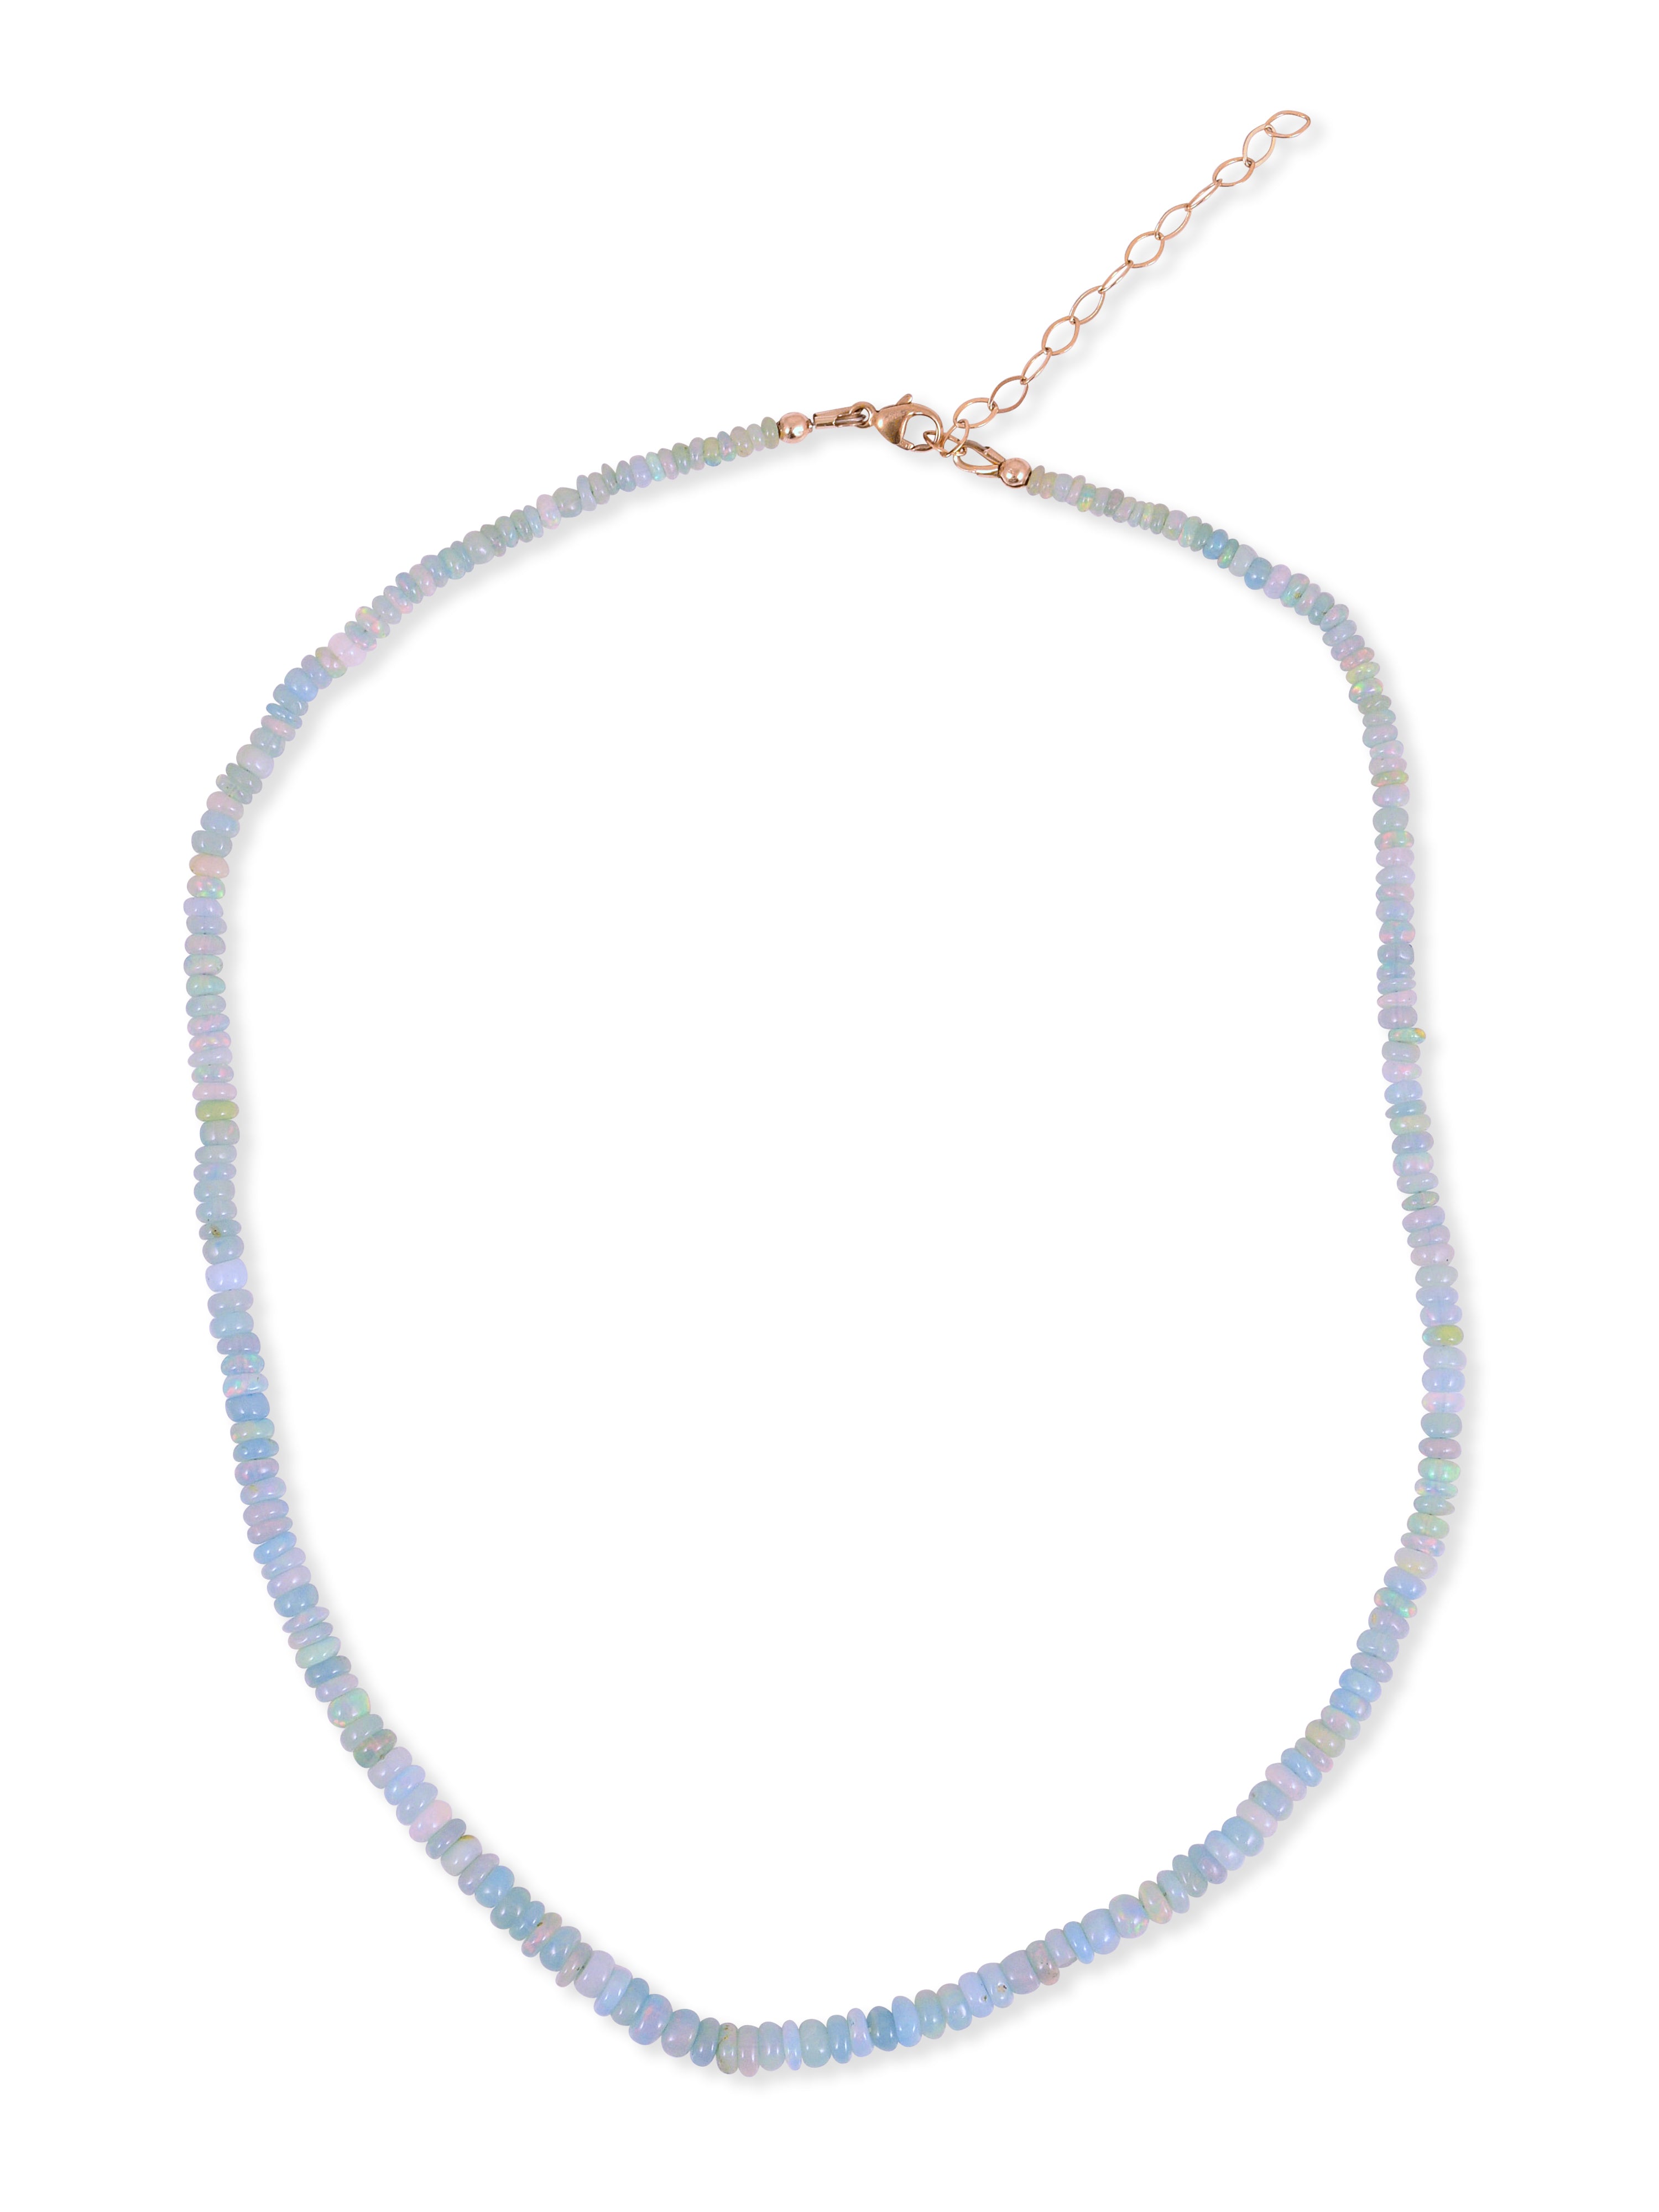 Cerulean Sea necklace